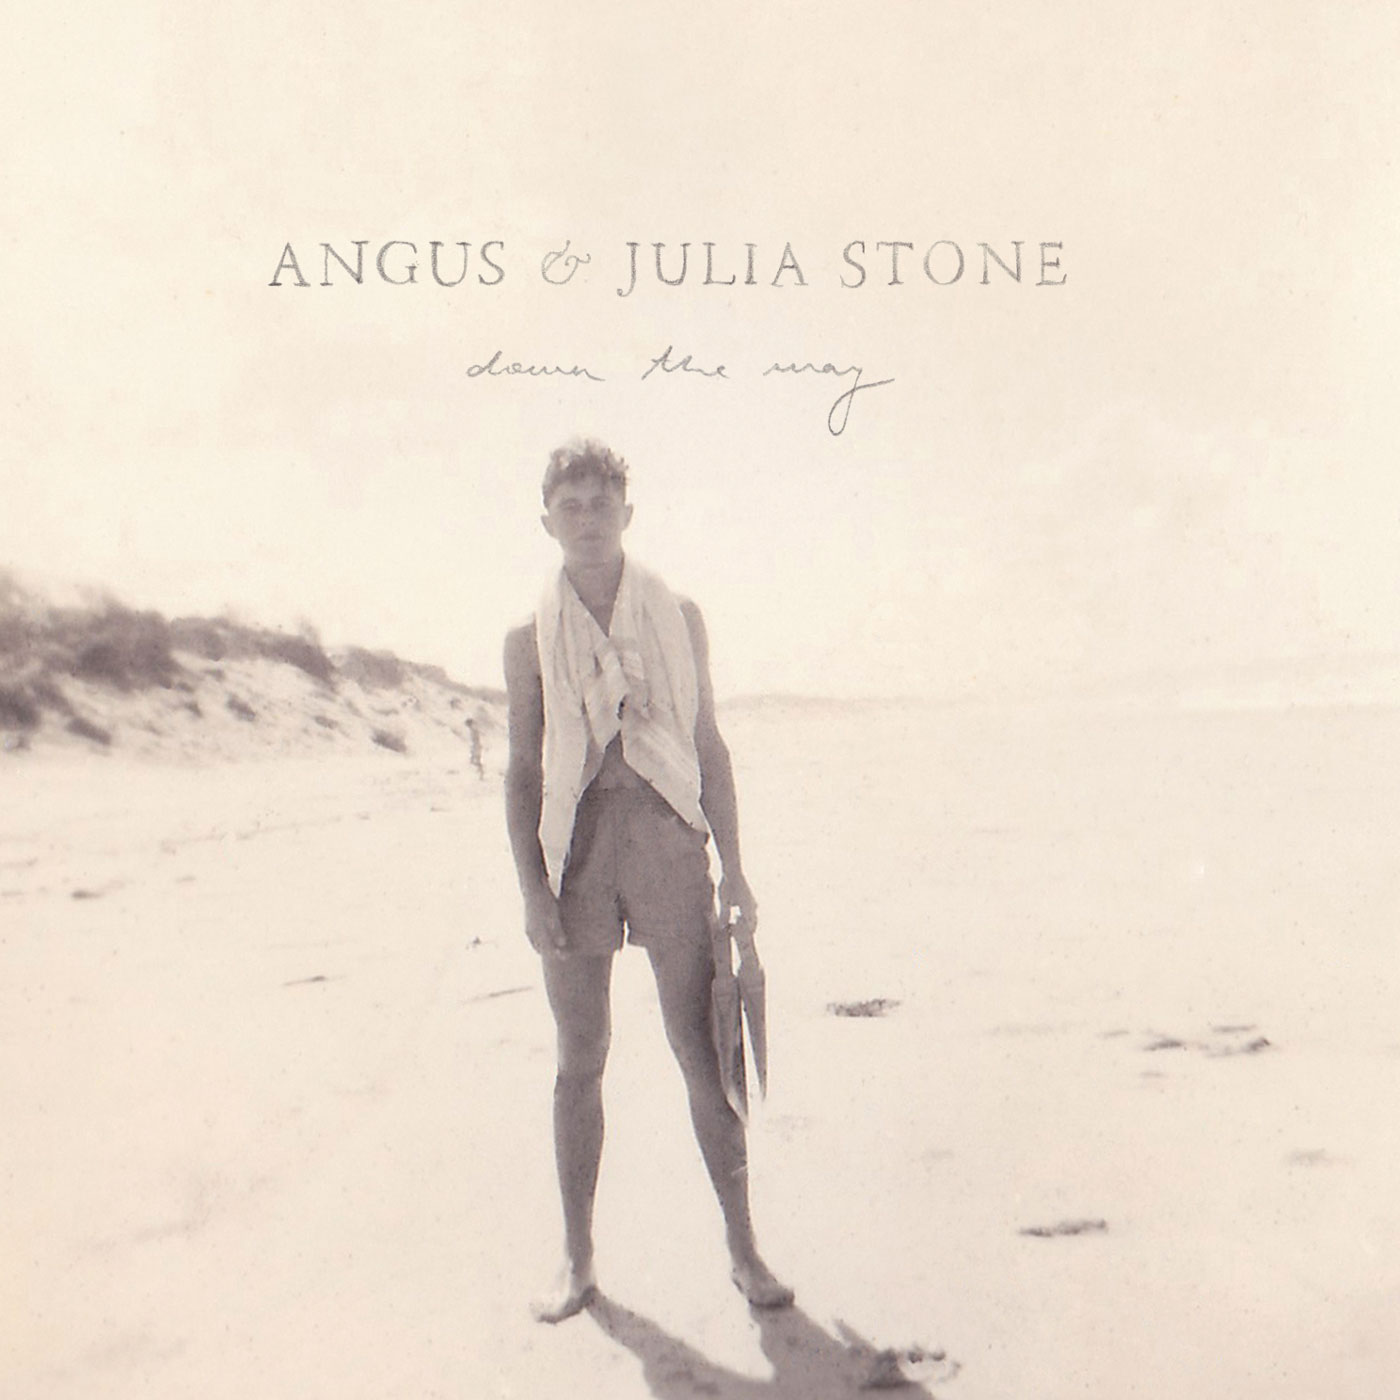 ANGUS JULIA STONE DOWN THE WAY